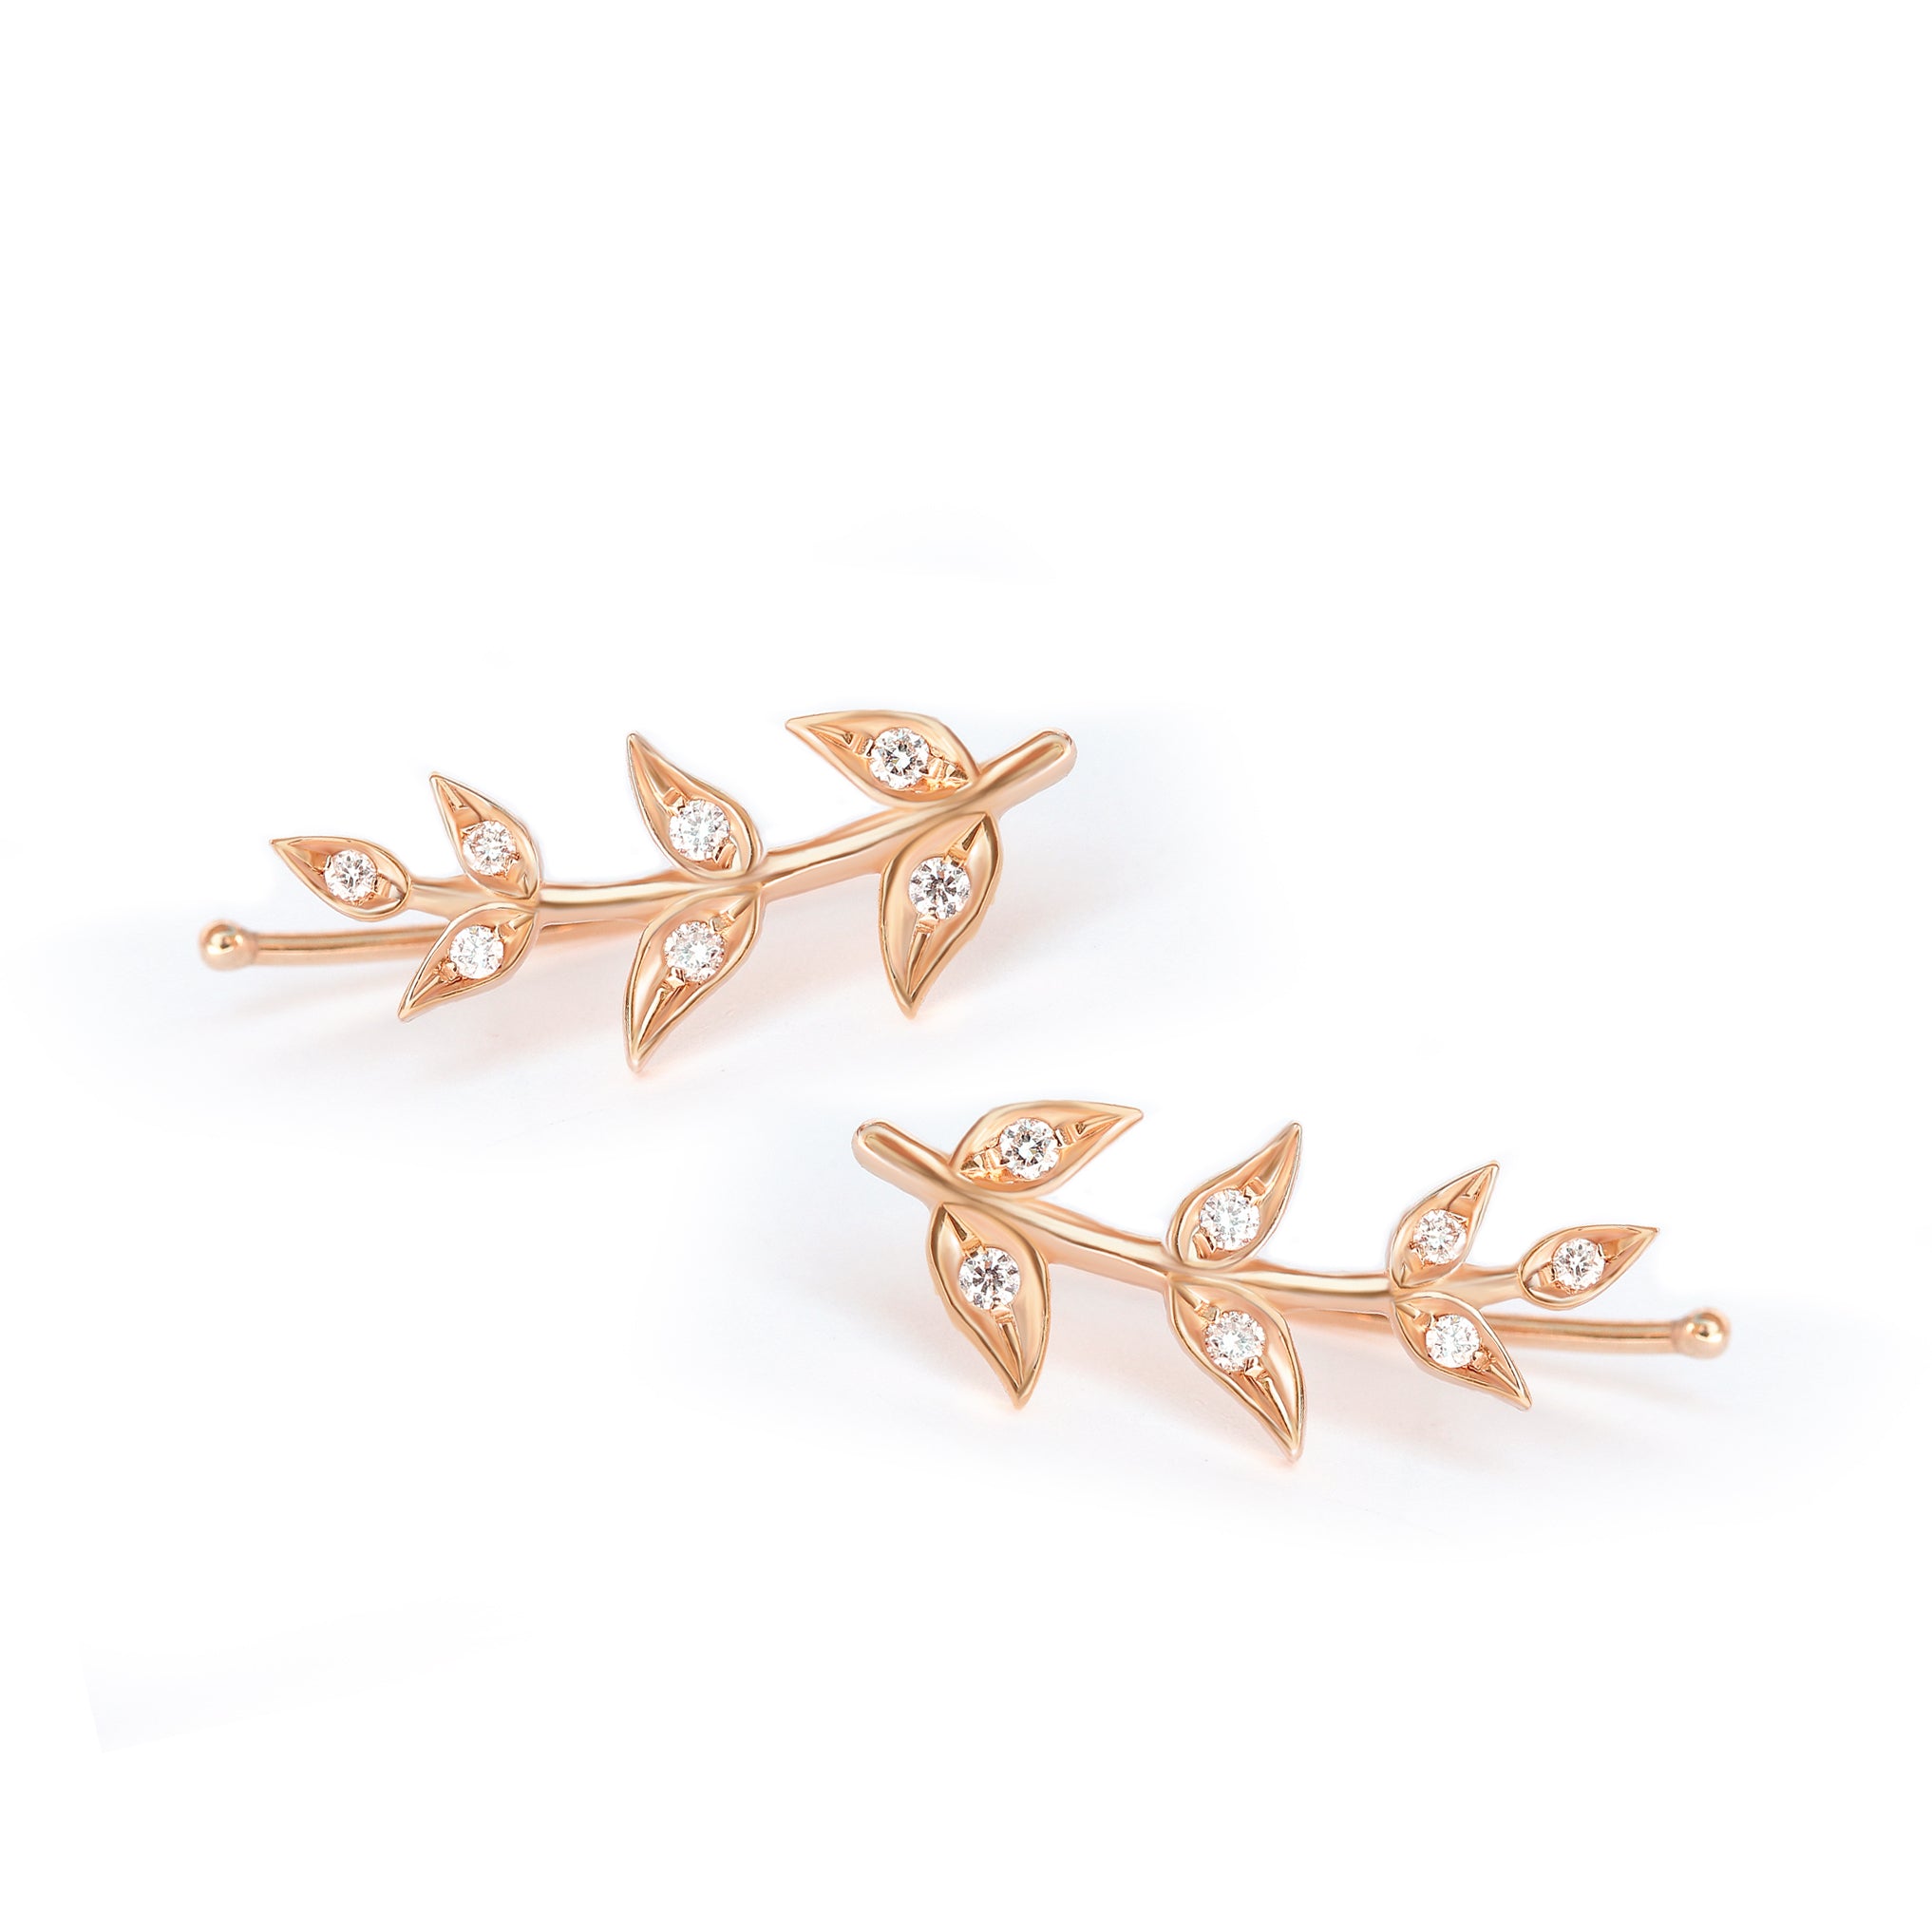 Olive Branch Leaves gold & Diamonds wedding earrings , greek Earrings - sillyshinydiamonds